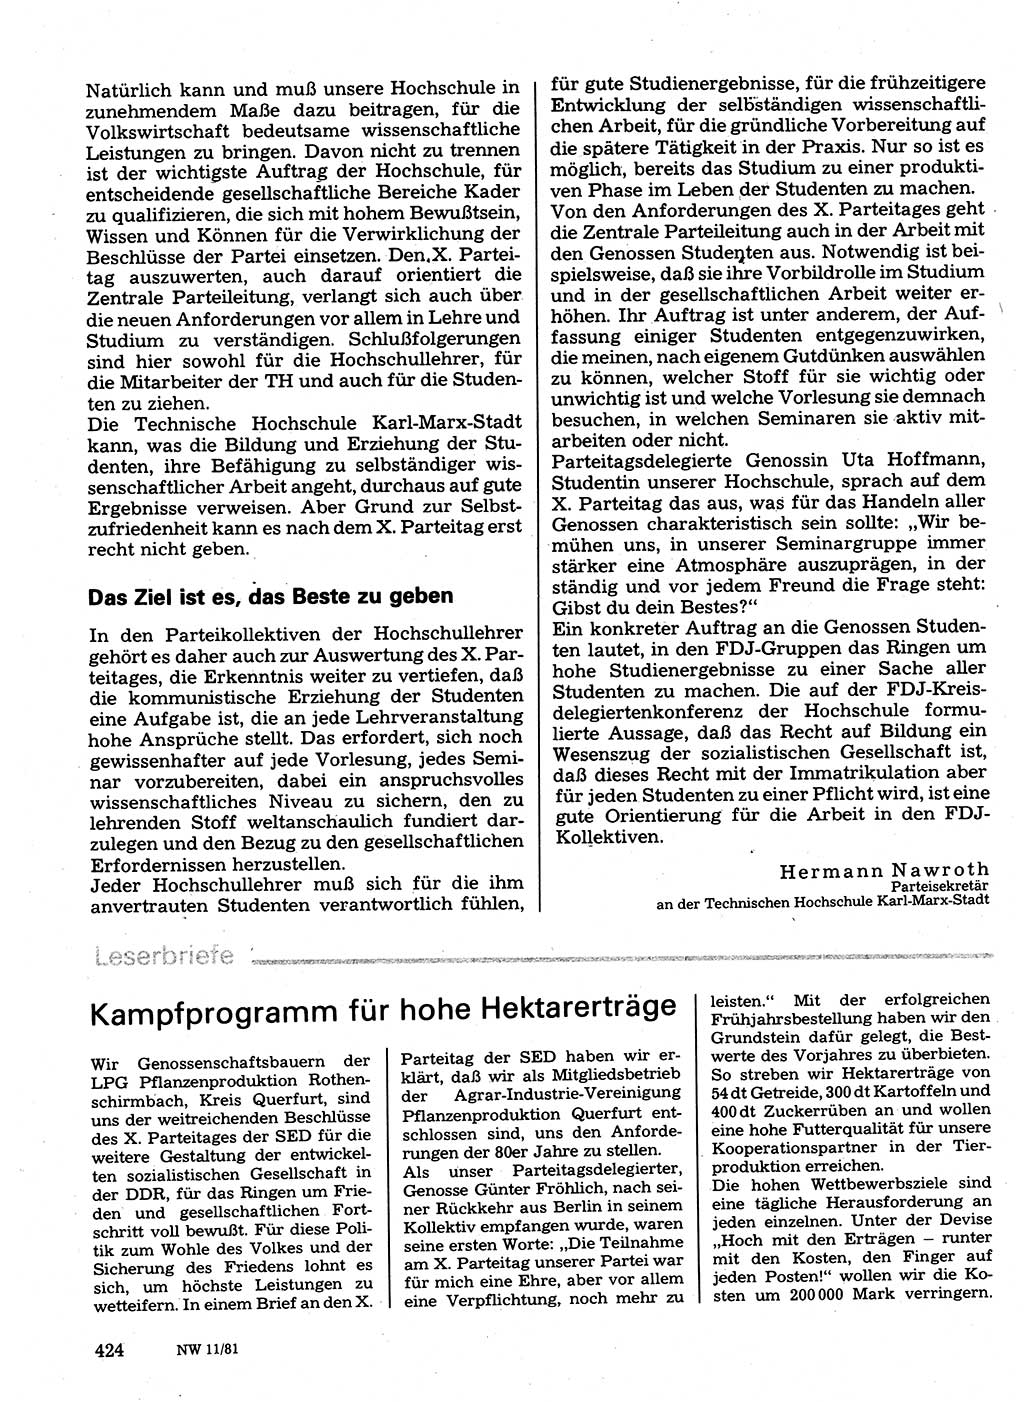 Neuer Weg (NW), Organ des Zentralkomitees (ZK) der SED (Sozialistische Einheitspartei Deutschlands) für Fragen des Parteilebens, 36. Jahrgang [Deutsche Demokratische Republik (DDR)] 1981, Seite 424 (NW ZK SED DDR 1981, S. 424)